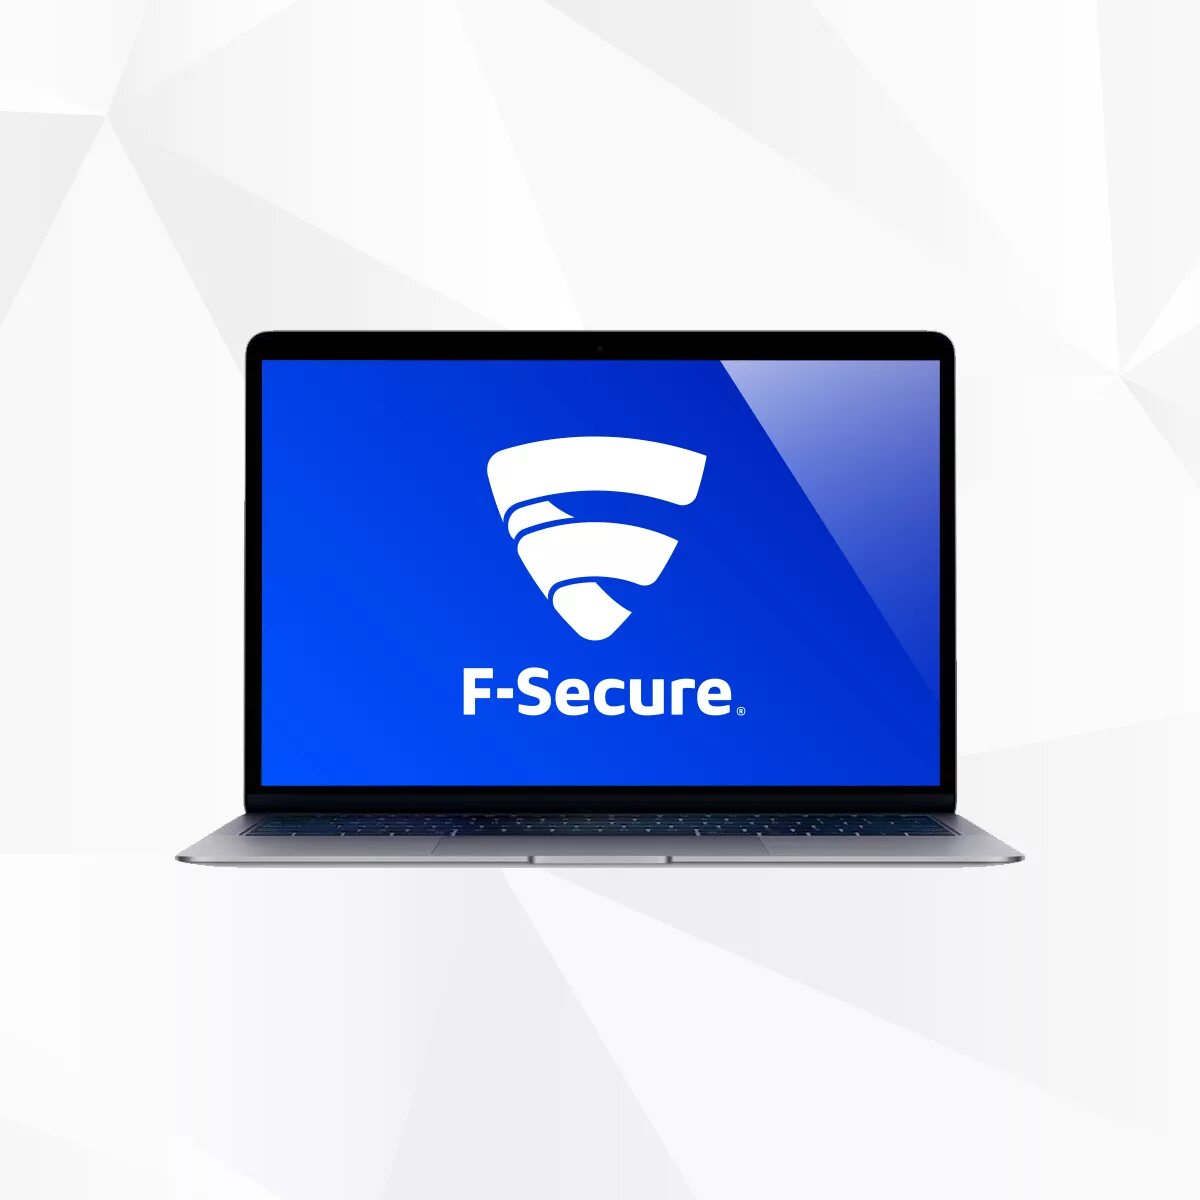 F-secure. F-secure Anti-virus. F-secure Anti-virus логотип. F-secure (Финляндия).